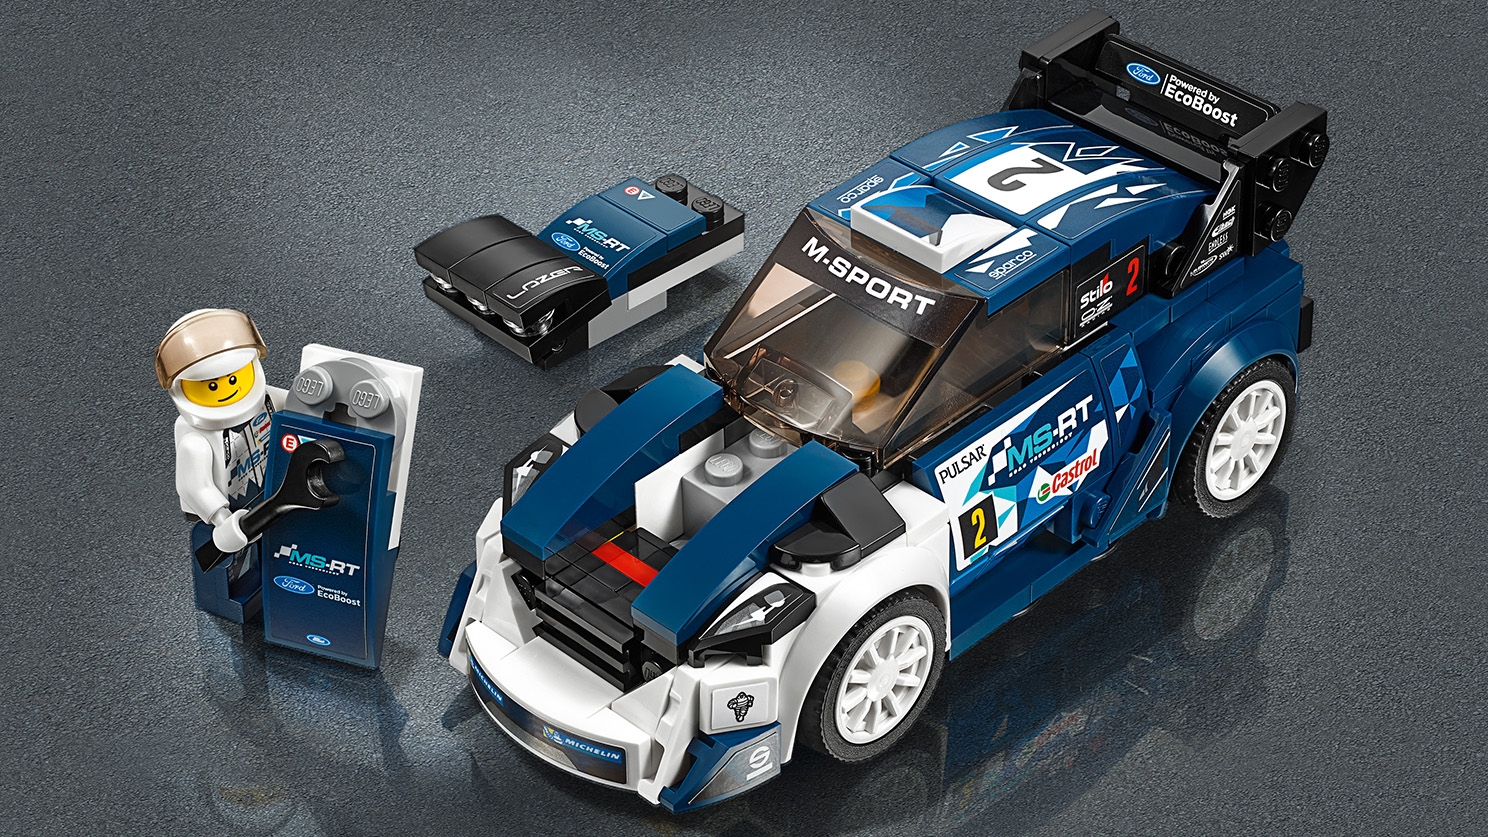 Uforudsete omstændigheder gå lukke フォード・フィエスタ Mスポーツ WRC 75885 - レゴ®スピードチャンピオン セット - LEGO.comキッズ